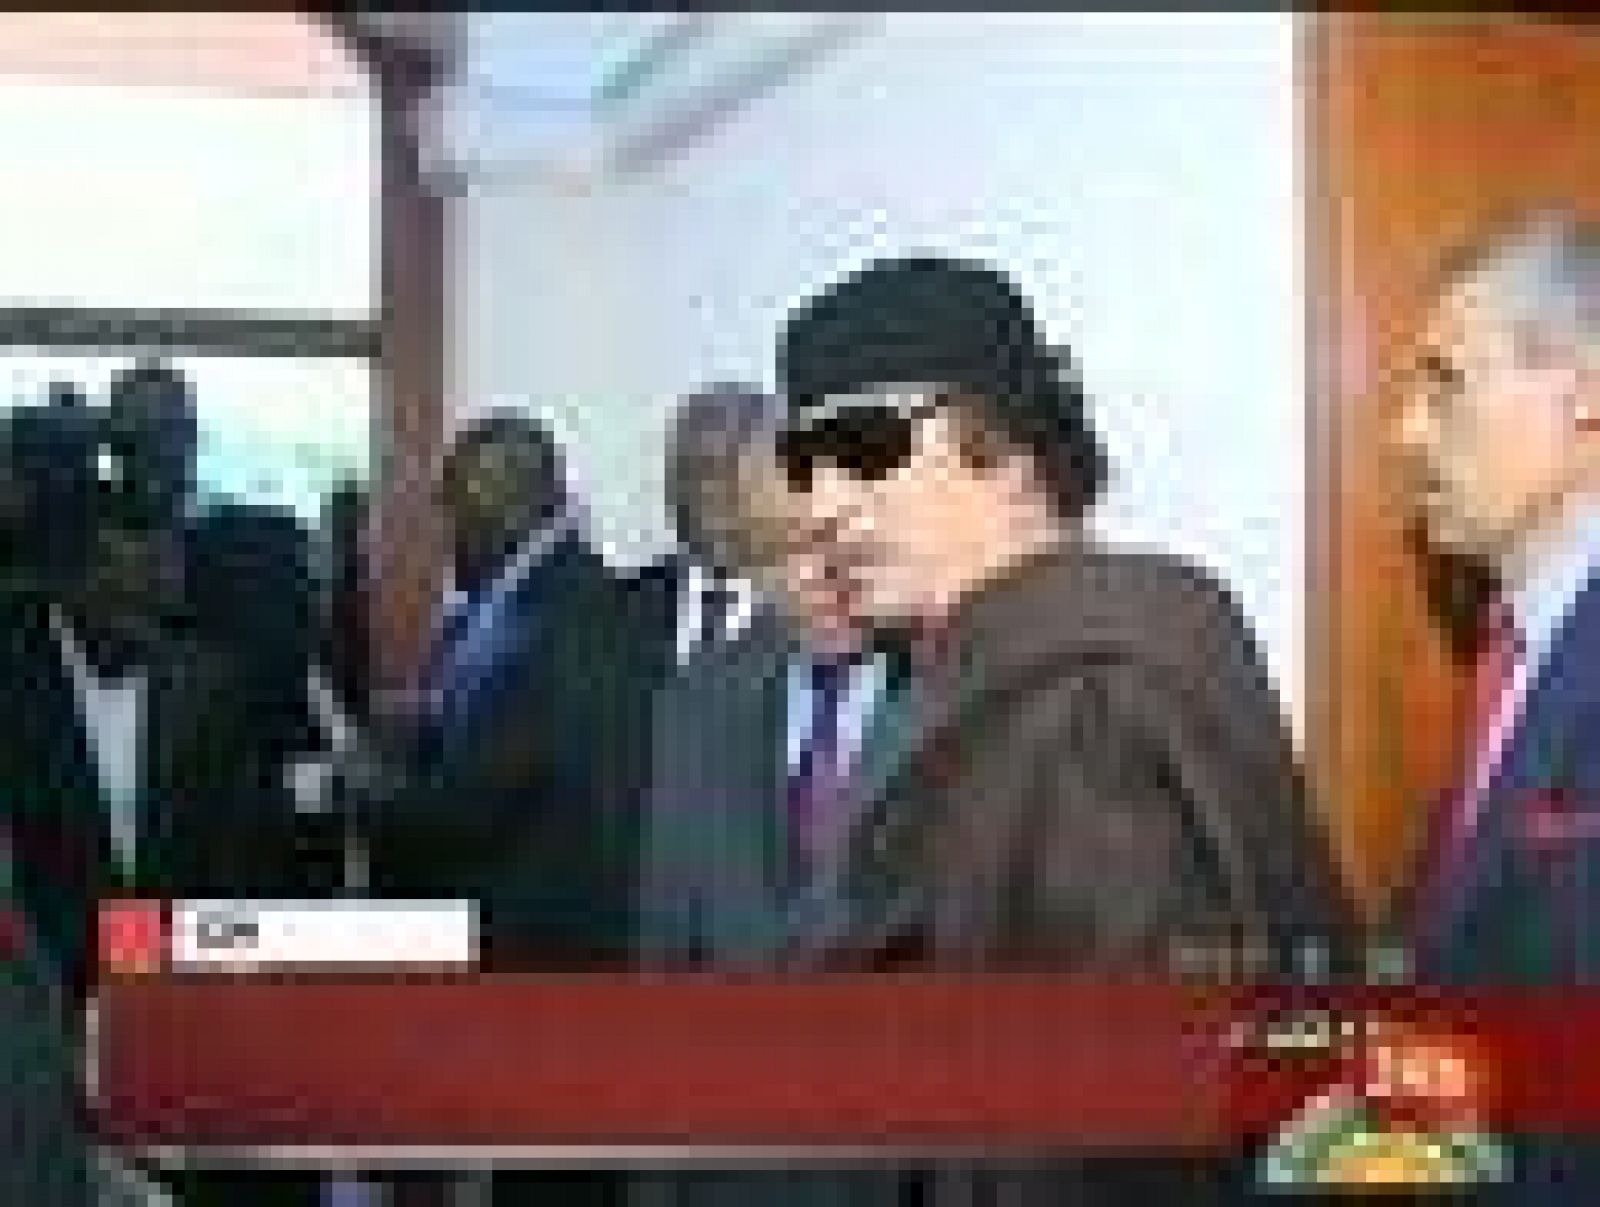  El presidente sudafricano, Jacob Zuma, ha visitado Trípoli y se ha reunido con el líder libio, Muamár al Gadafi este lunes para intentar buscar una solución negociada al conflicto entre los rebeldes libios y el régimen de Muamar al Gadafi. Esta ha sido la primera vez que el líder libio ha sido visto desde el pasado 11 de mayo. Zuma ha sido recibido a su llegada a Libia por el primer ministro libio, Baghdadi Mamudi, en el aeropuerto.